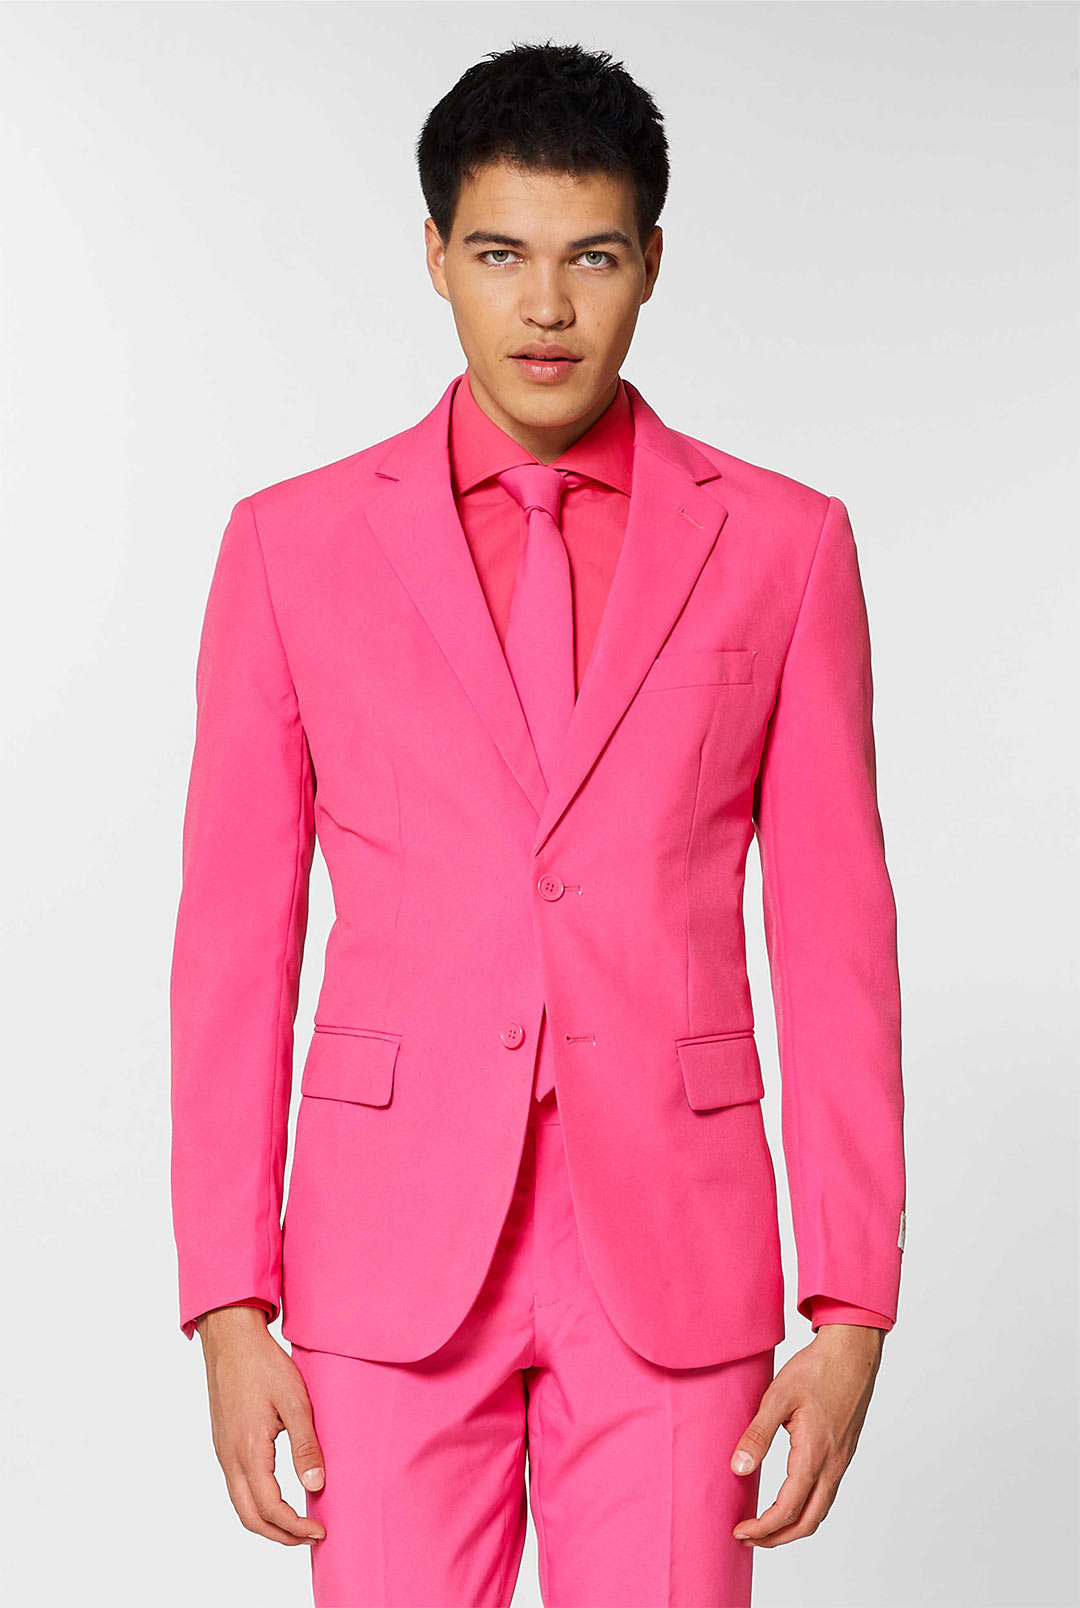 Pink Color Function Wear Straight Cut Salwar Kameez In Pure Viscose Ve –  Rakhi Fashion Pvt Ltd